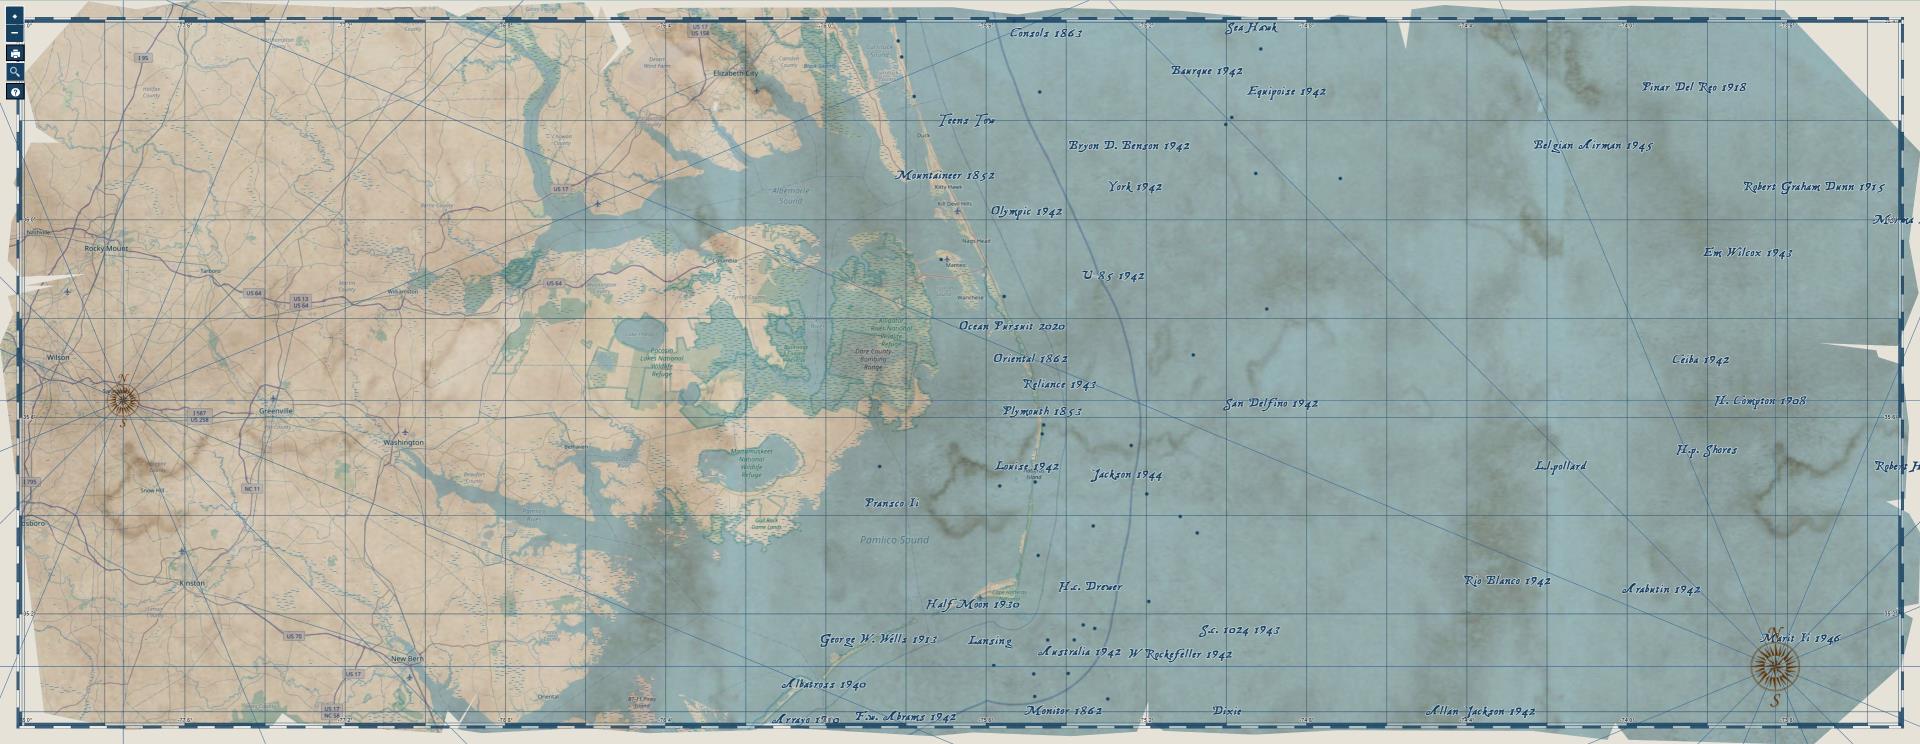 GIS Day 2020 Shipwreck Map